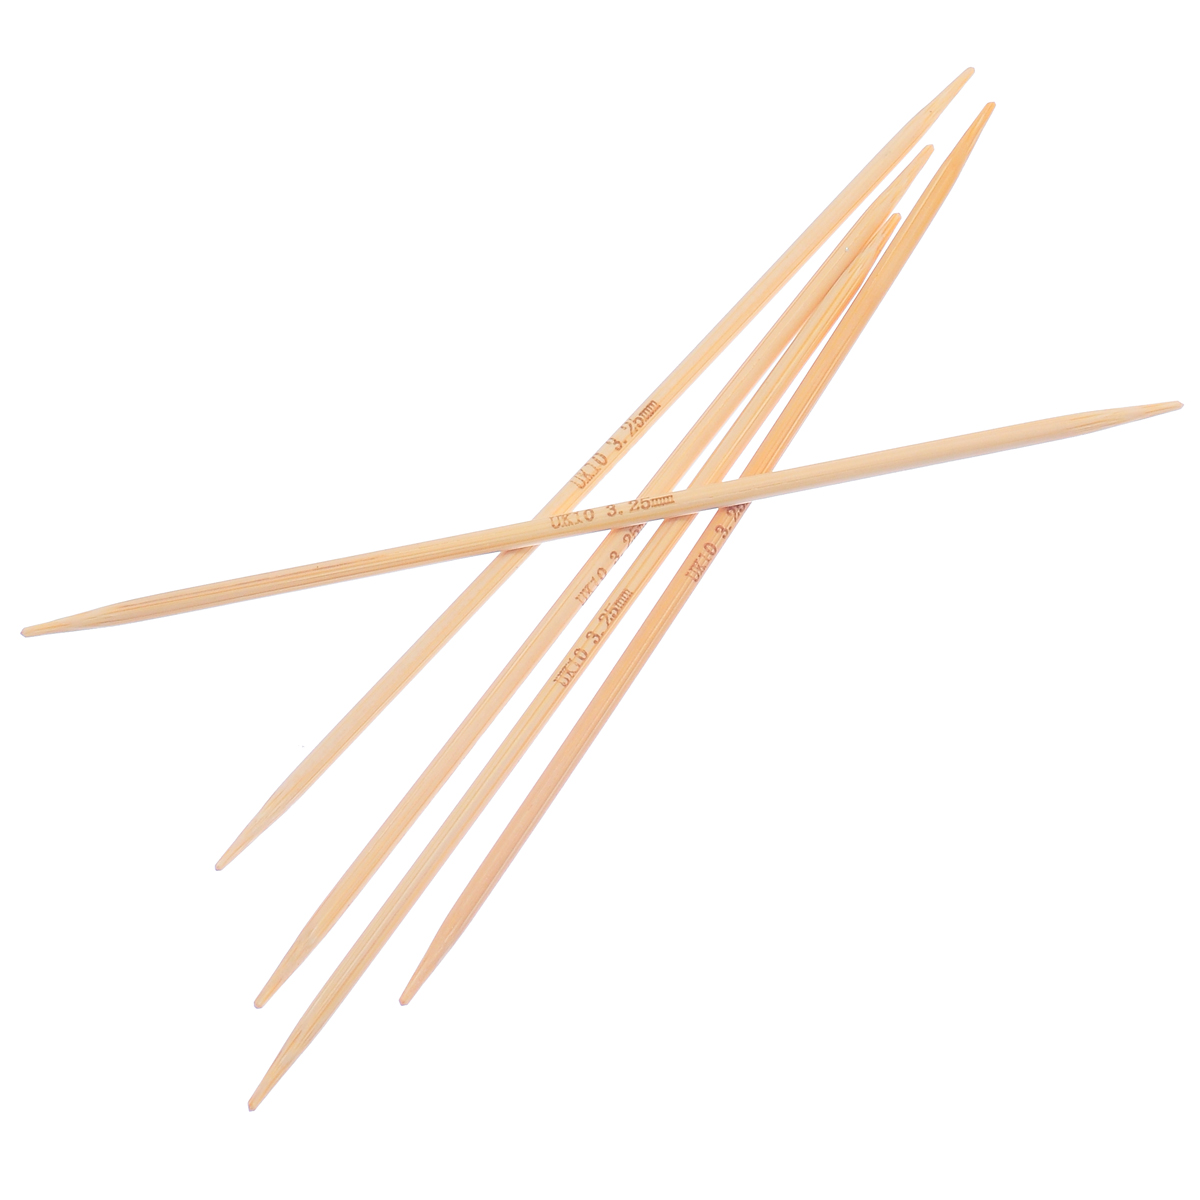 (UK10 3.25mm) 竹 ダブルポイント 編み針 ナチュラル 15cm 長さ、 1 セット ( 5 個/セット) の画像